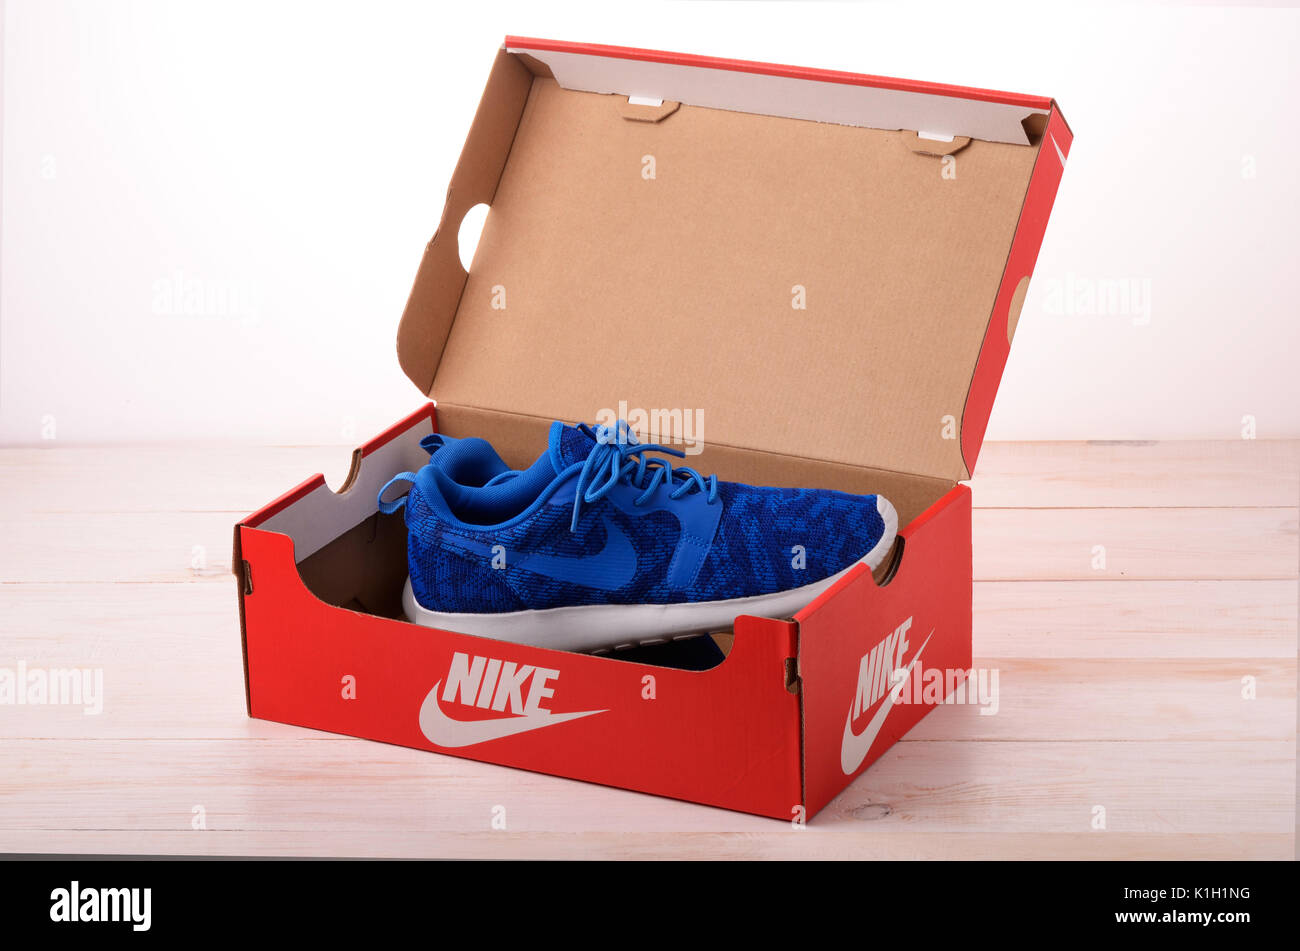 SAMARA, Rusia - Febrero 11, 2017: Azul Nike zapatillas para correr cuadro rojo, fútbol, entrenamiento, el logo de Nike, a título ilustrativo, la editorial Fotografía de stock - Alamy